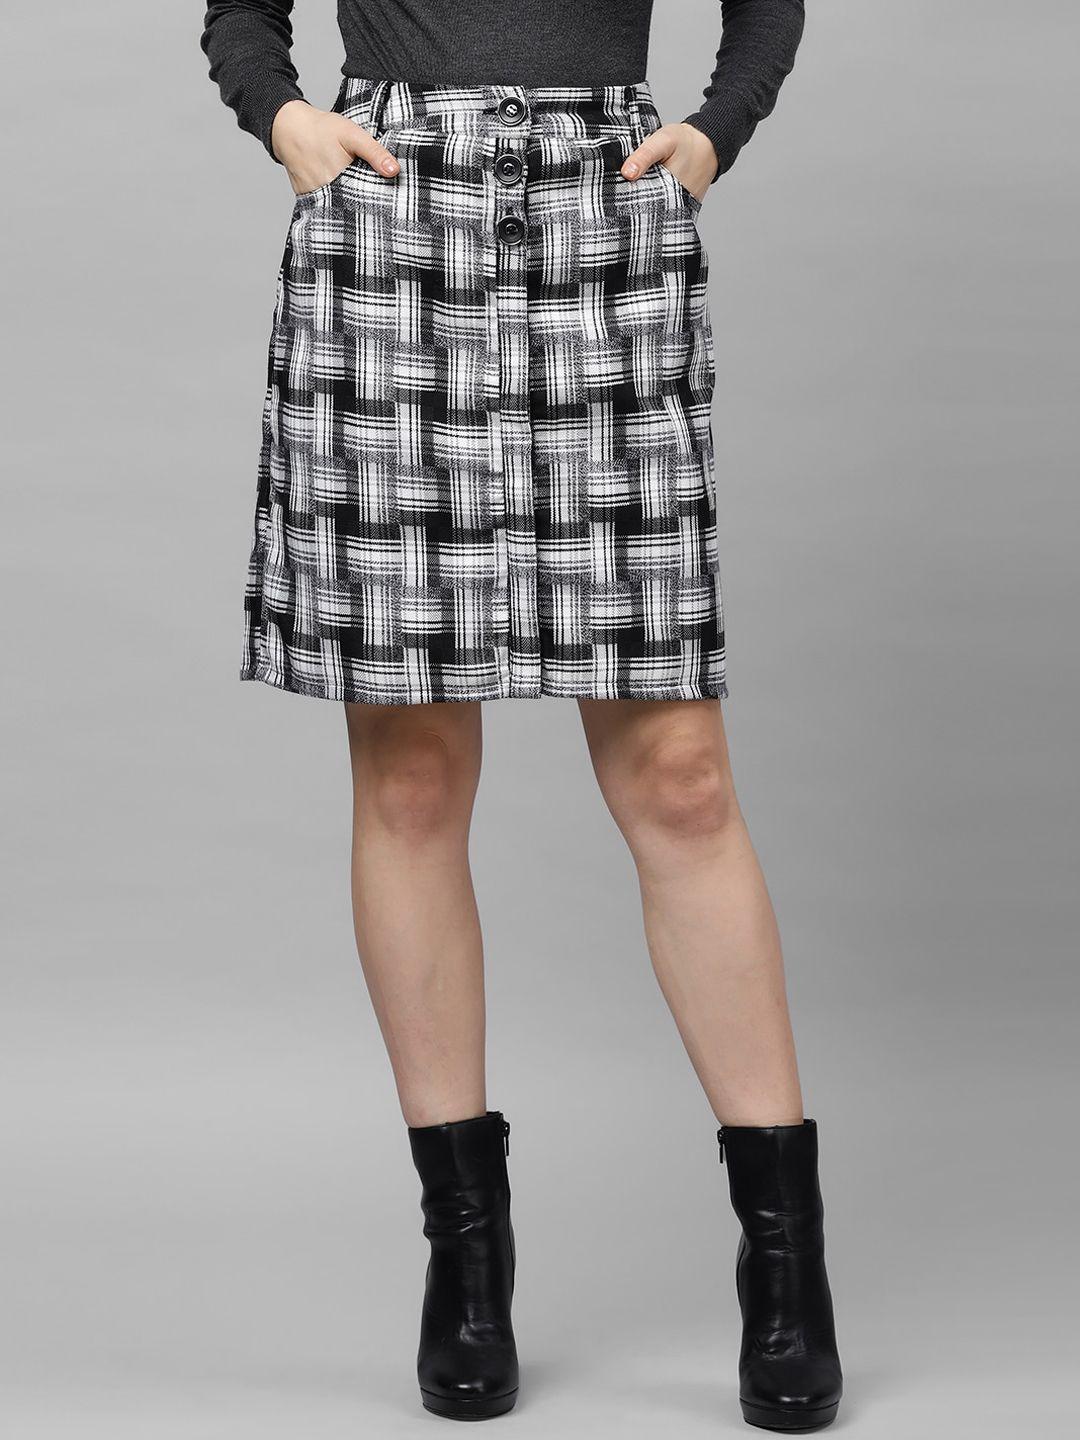 athena-women-black-&-white-checked-a-line-skirt